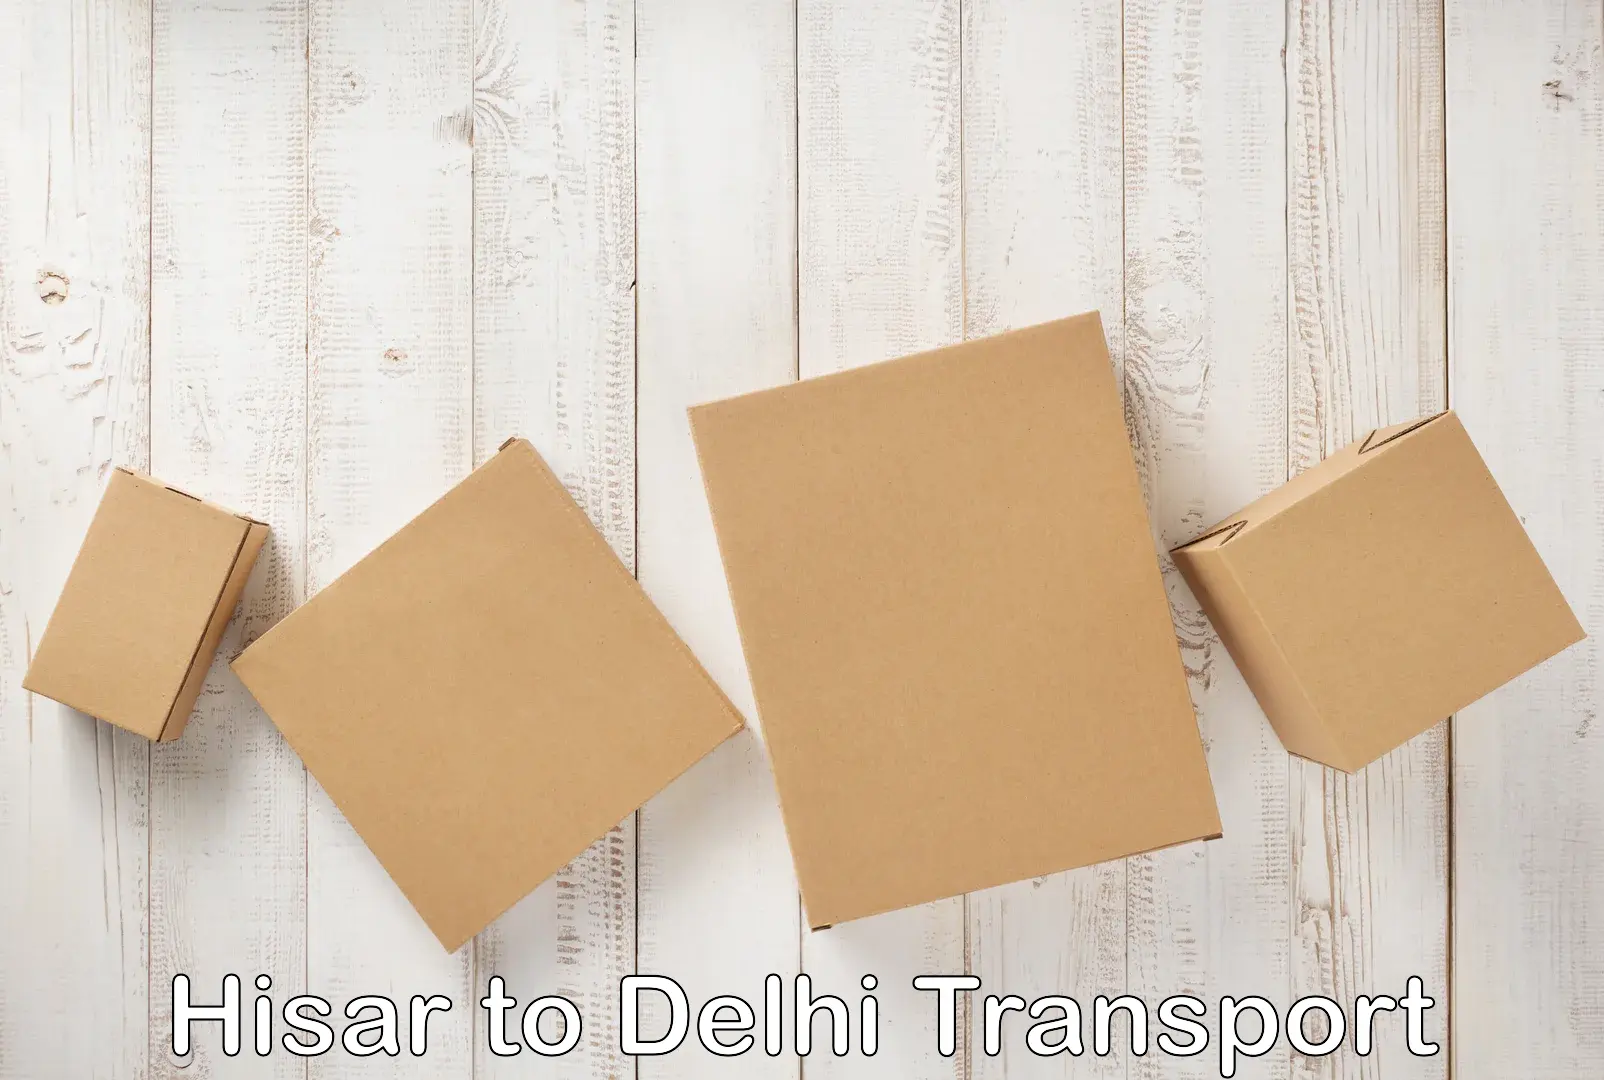 Bike shipping service Hisar to Delhi